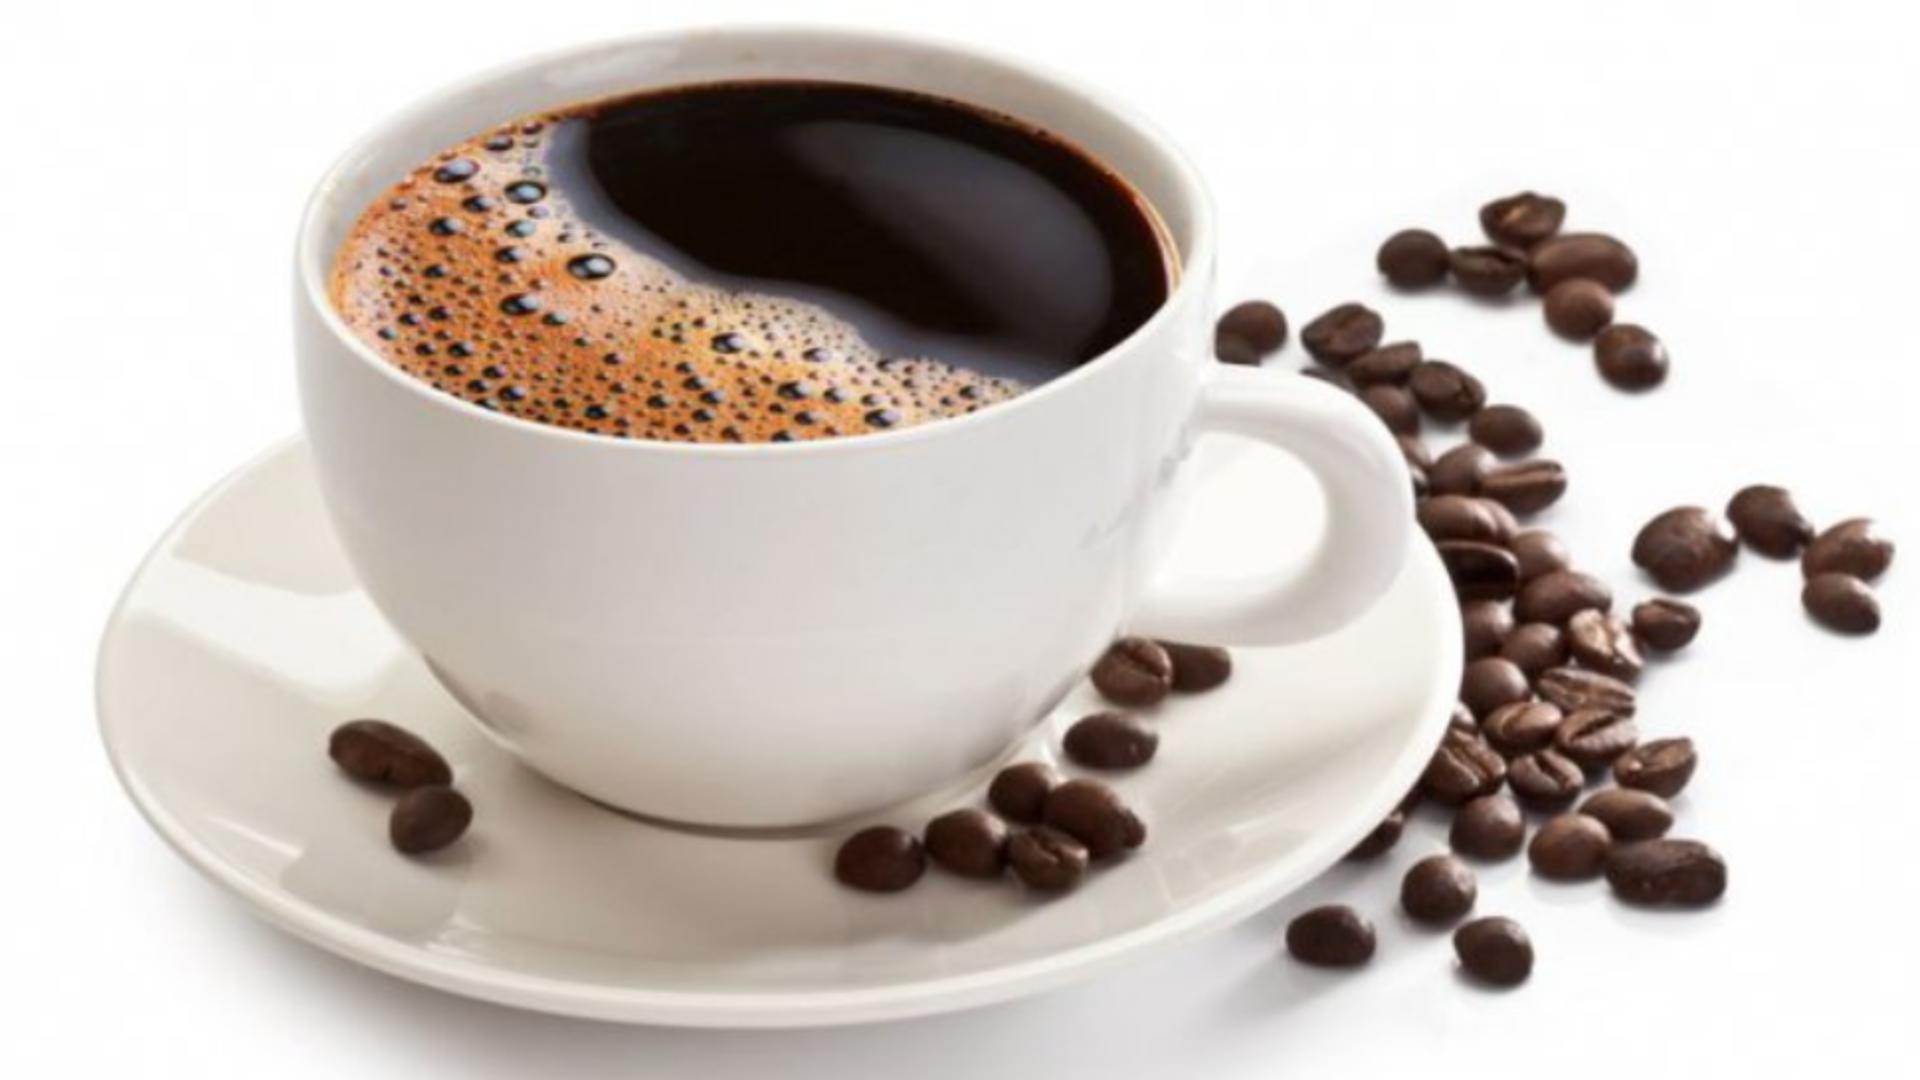 “Cea mai mare idioțenie dimineața este să bei o cafea” – avertisment teribil din partea medicilor